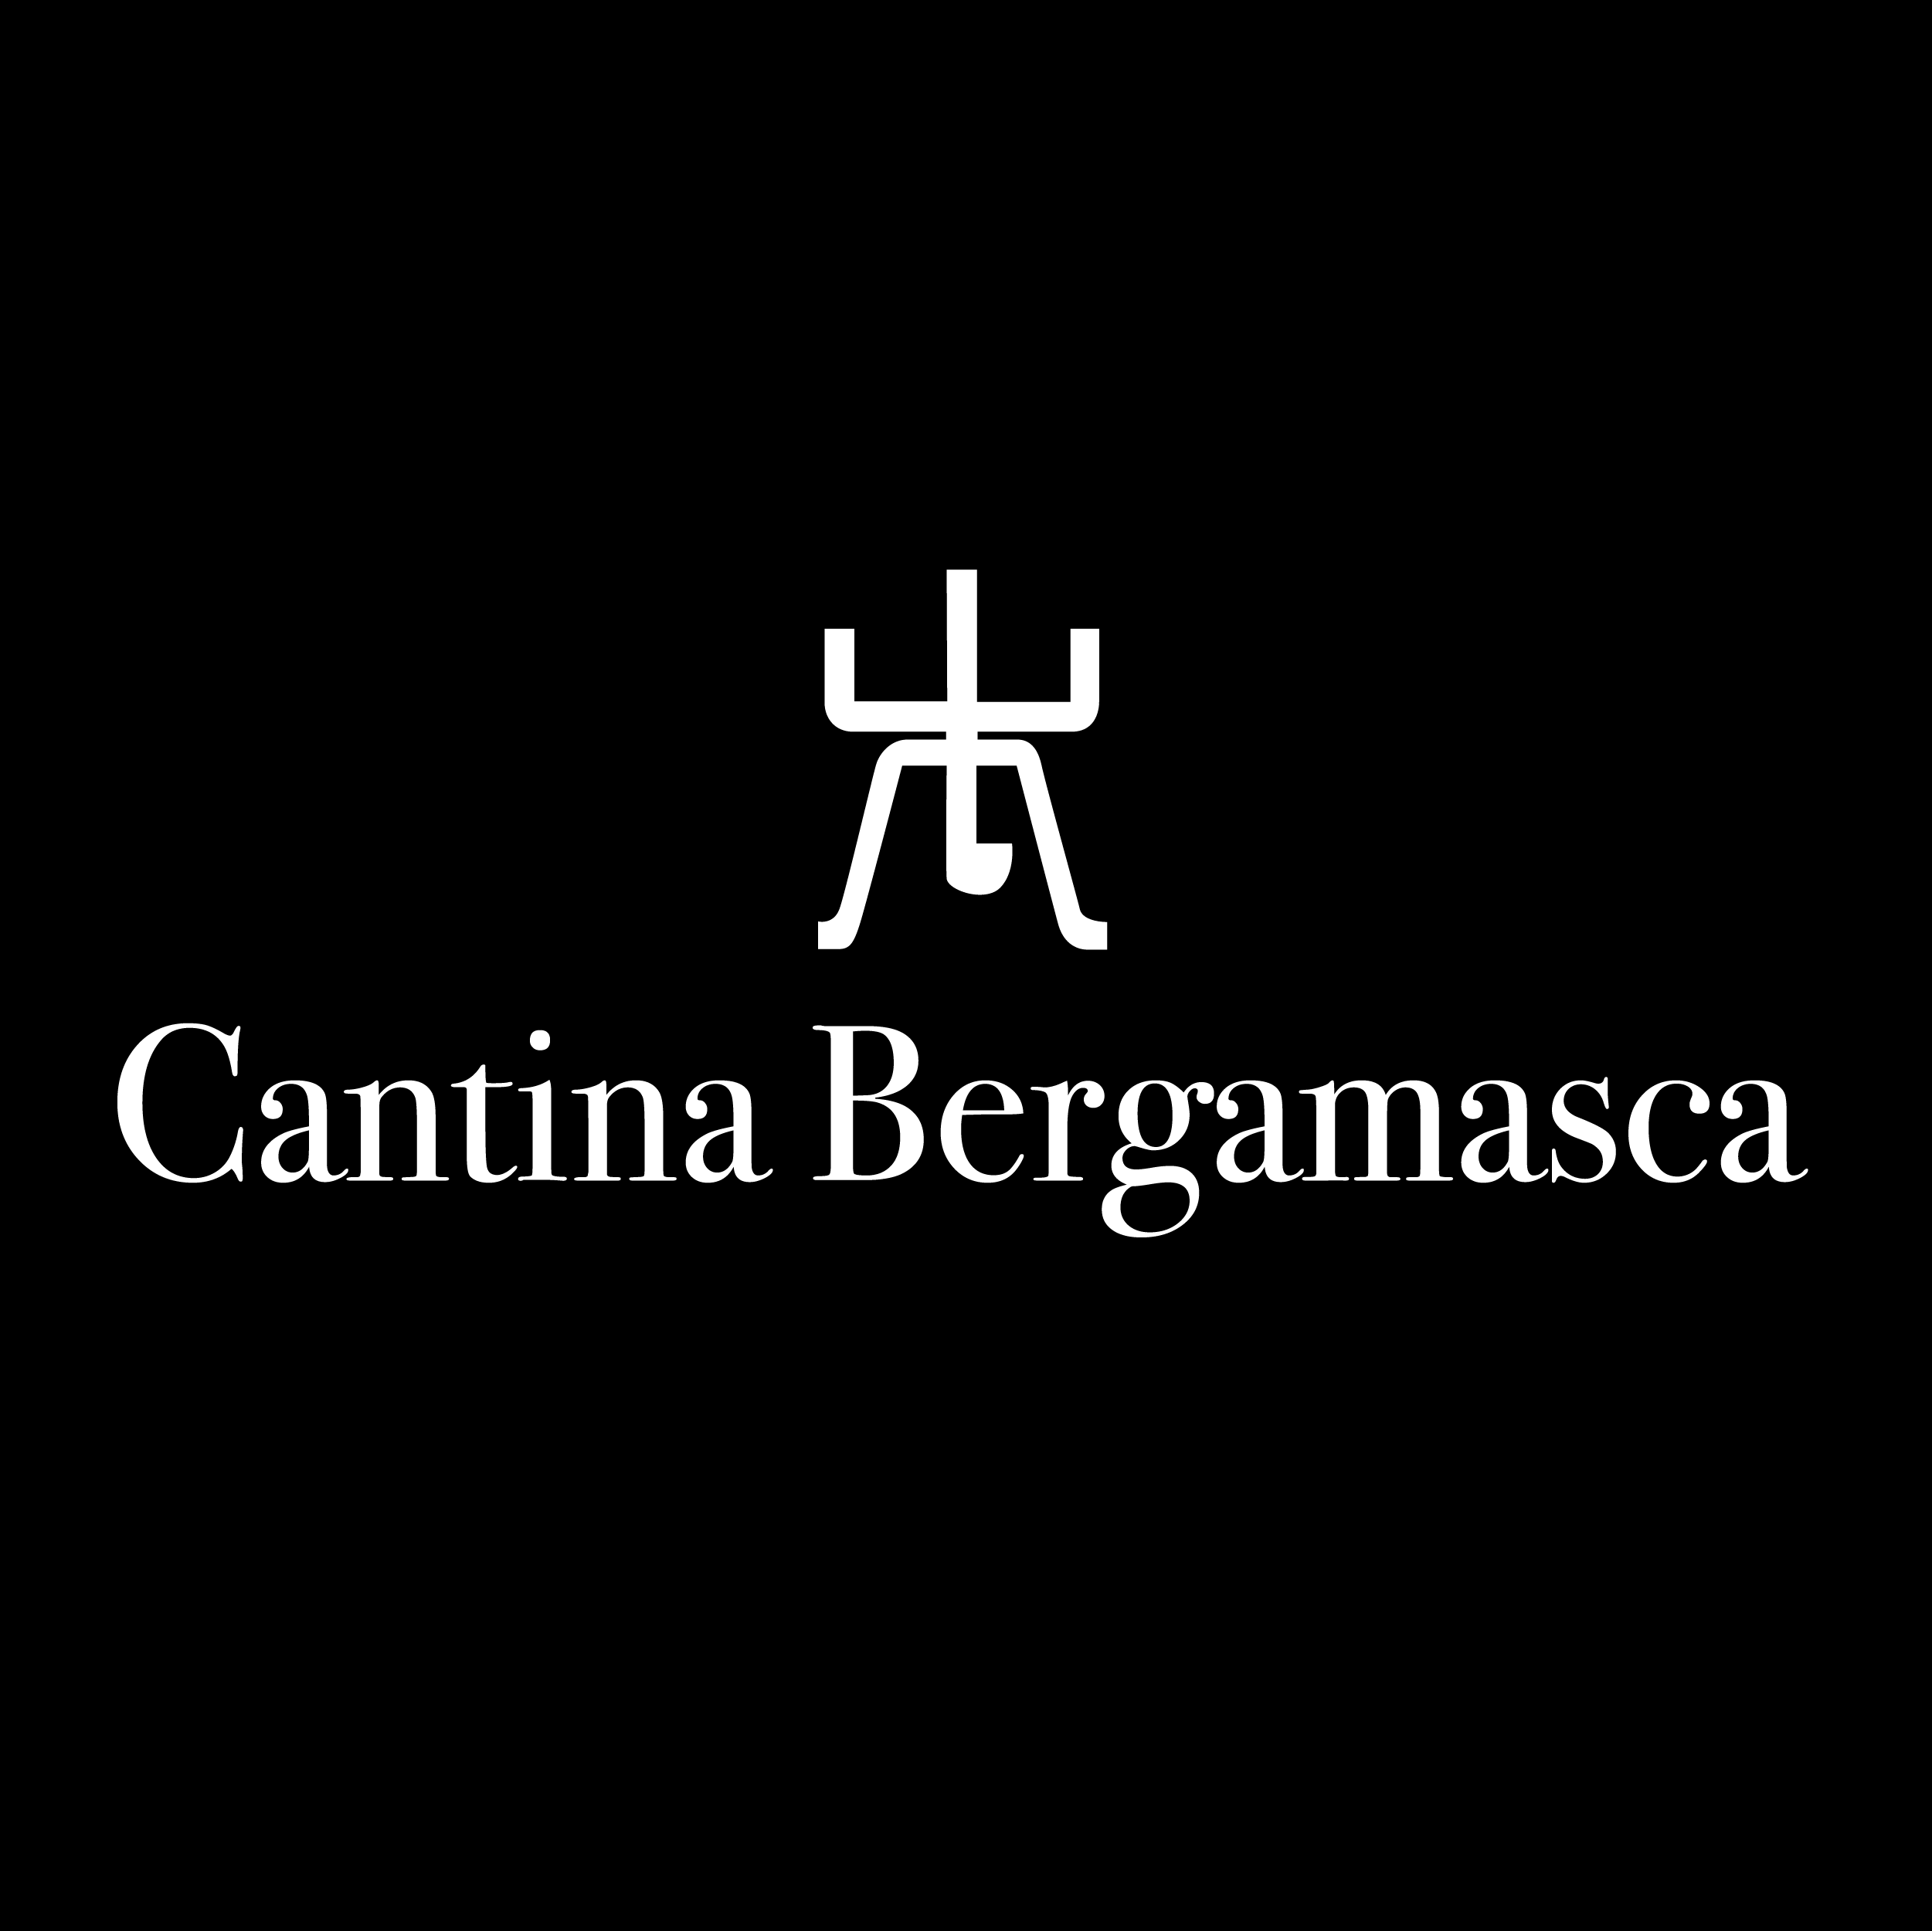 Cantina Bergamasca